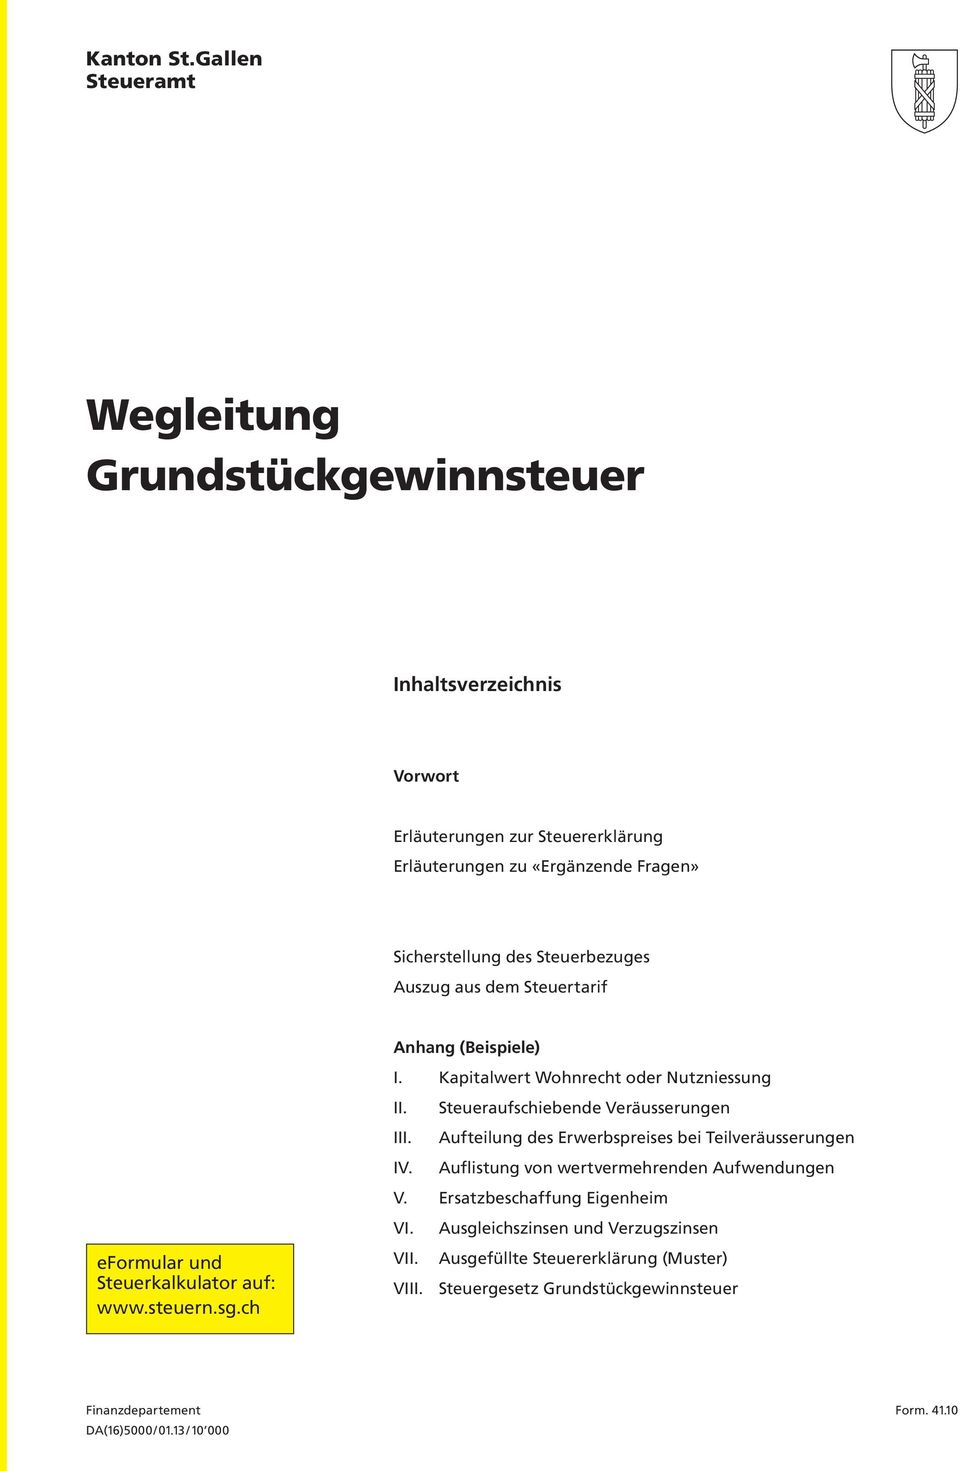 Steuerbezuges Auszug aus dem Steuertarif eformular und Steuerkalkulator auf: www.steuern.sg.ch Anhang (Beispiele) I. Kapitalwert Wohnrecht oder Nutzniessung II.